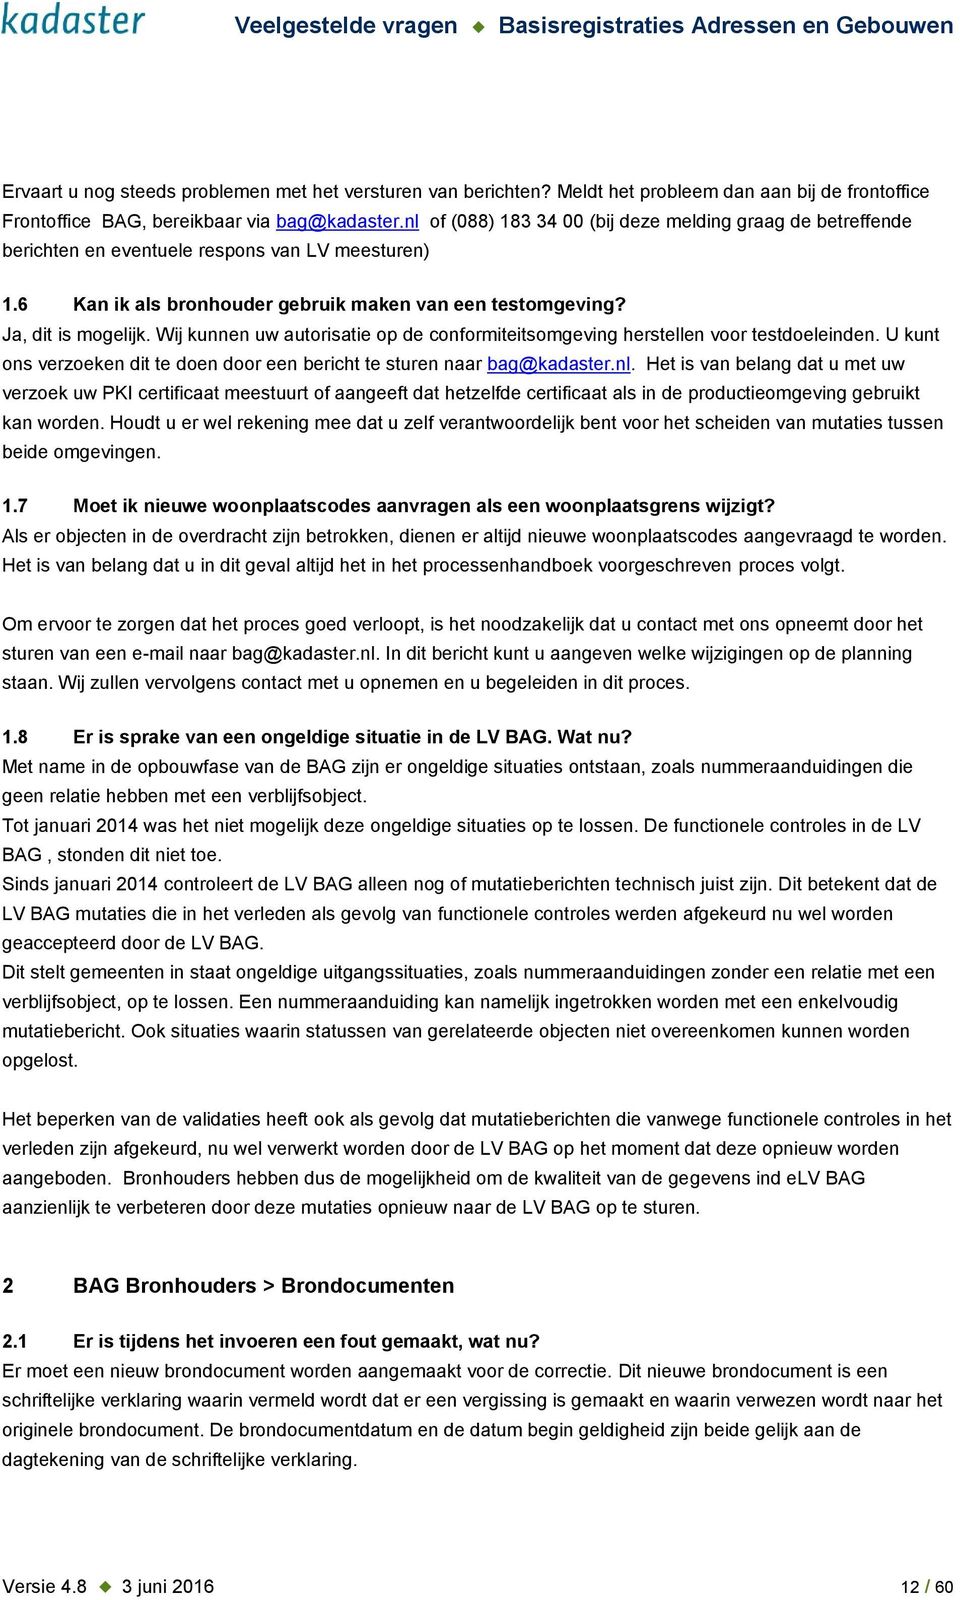 Wij kunnen uw autorisatie op de conformiteitsomgeving herstellen voor testdoeleinden. U kunt ons verzoeken dit te doen door een bericht te sturen naar bag@kadaster.nl.